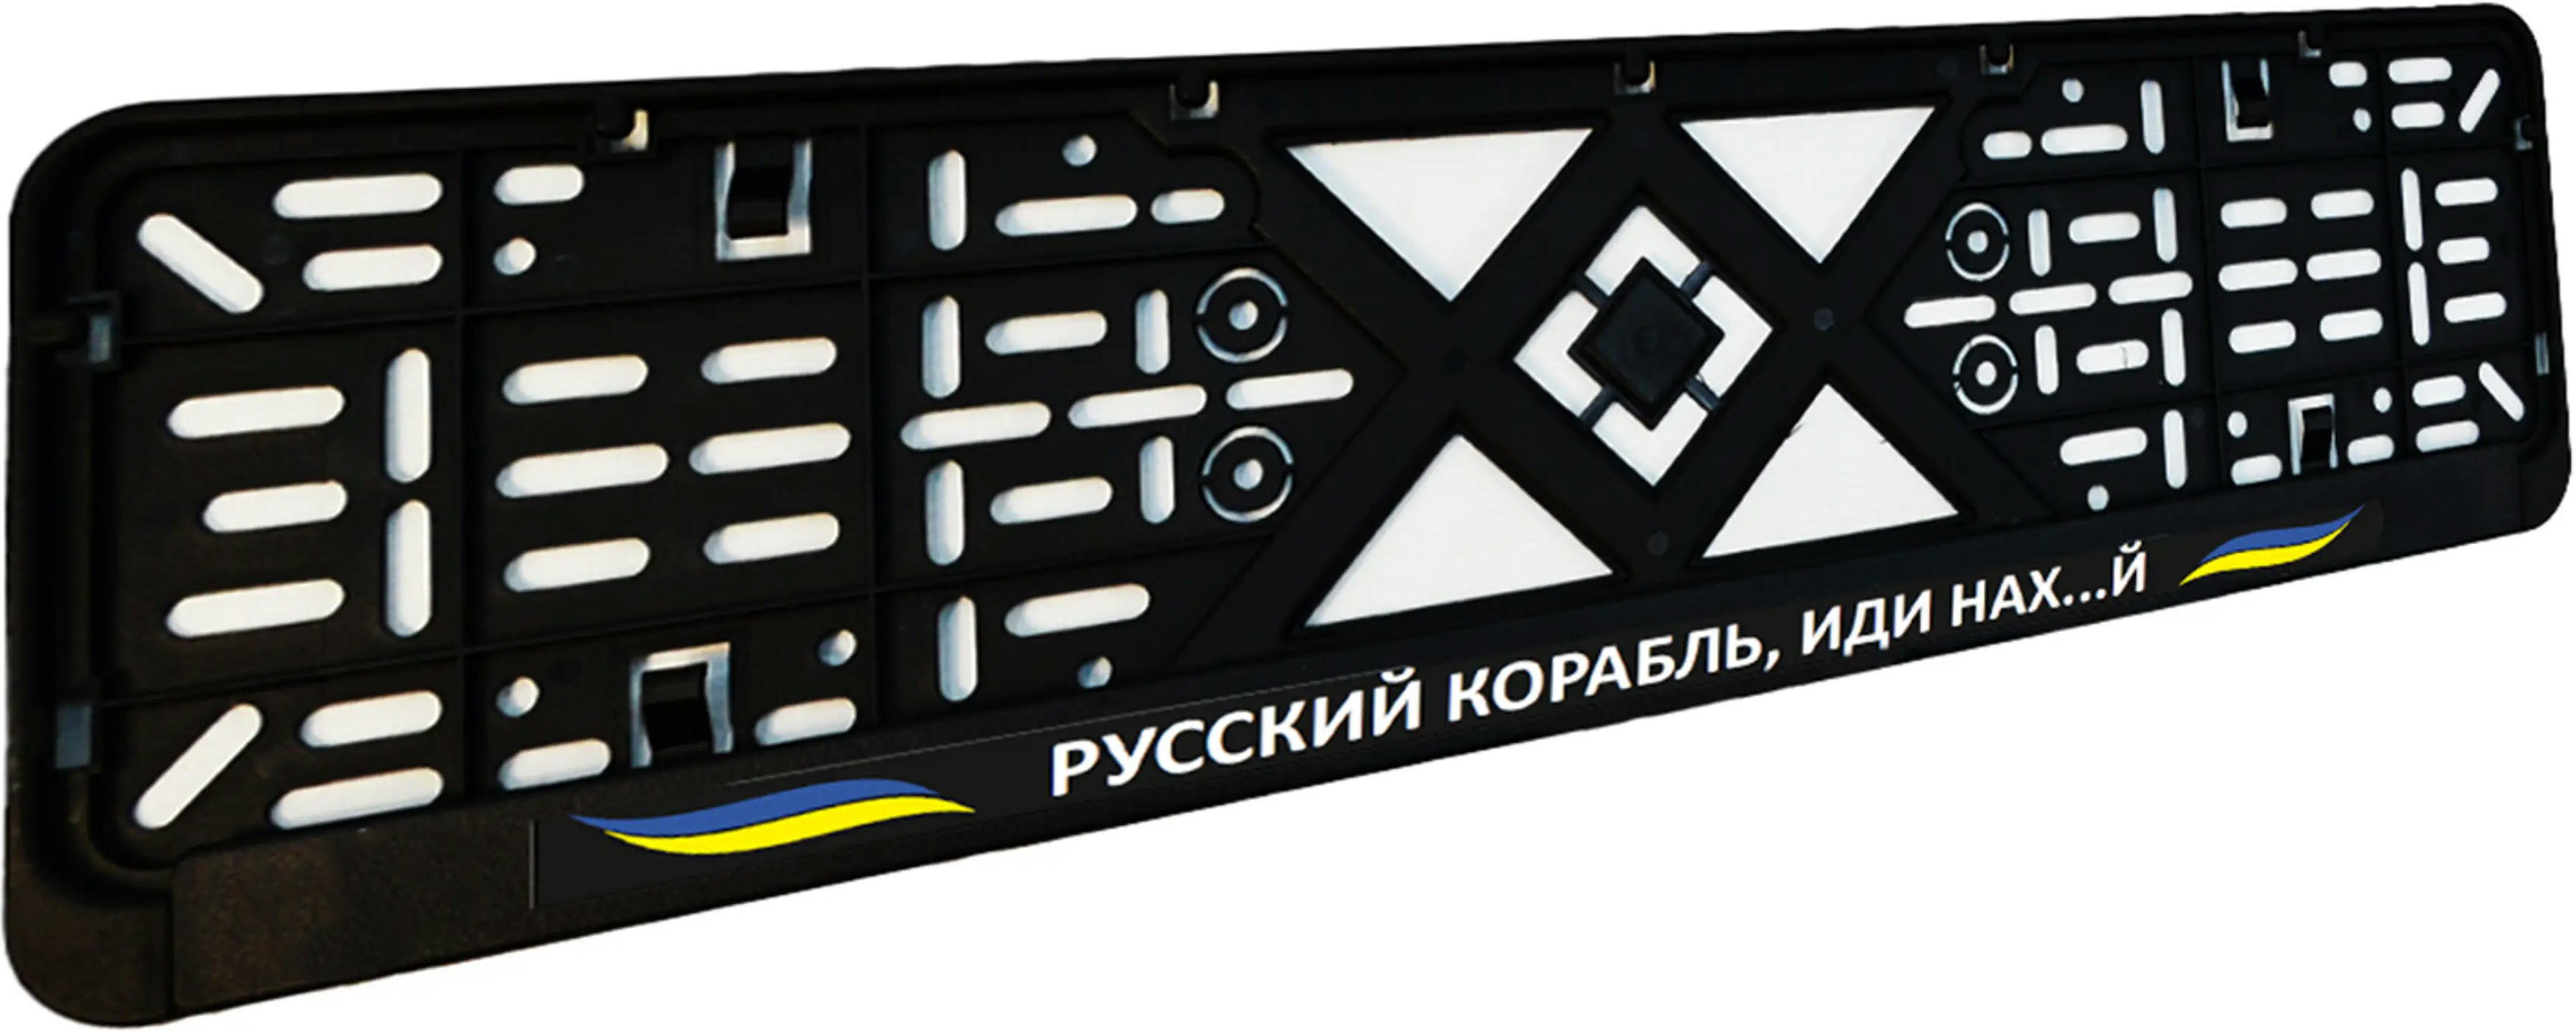 Рамка номерного знака Poputchik пластикова патріотична Російський корабель, іди нах…й (24-273-IS)фото3